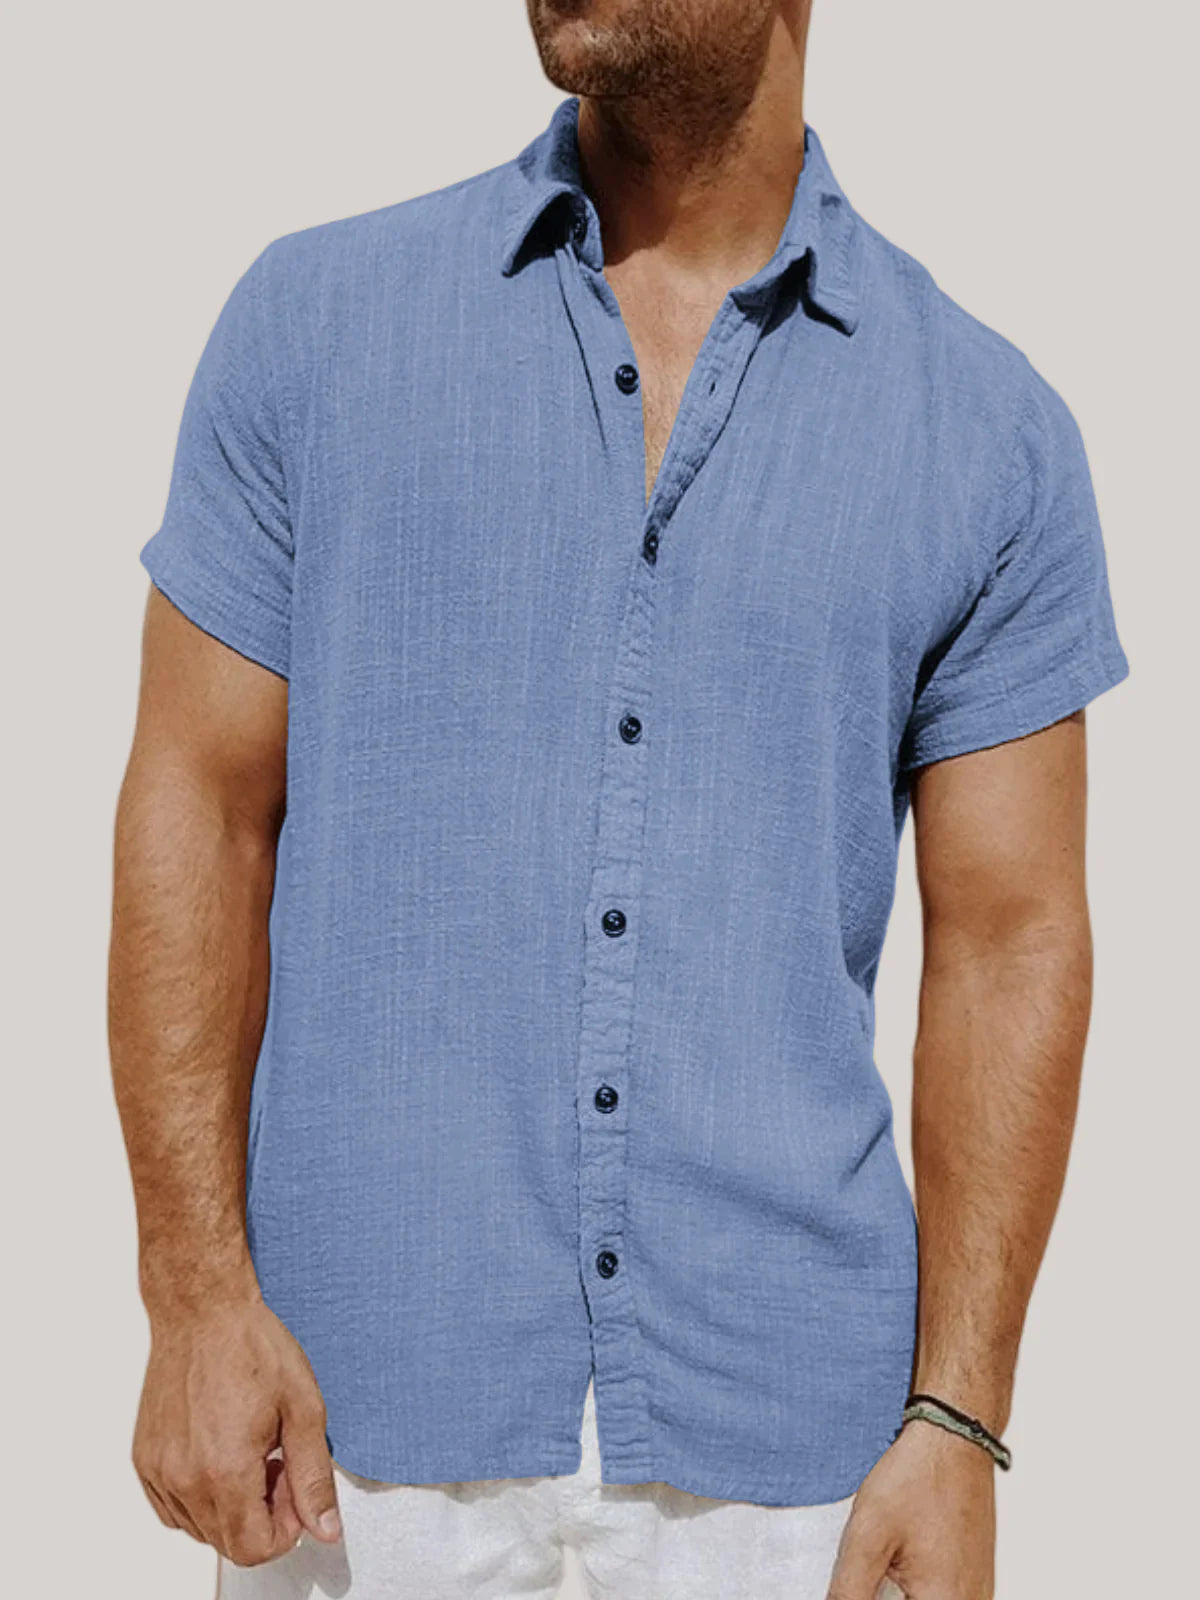 Oisin - Stylisches Leinen Hemd für Männer